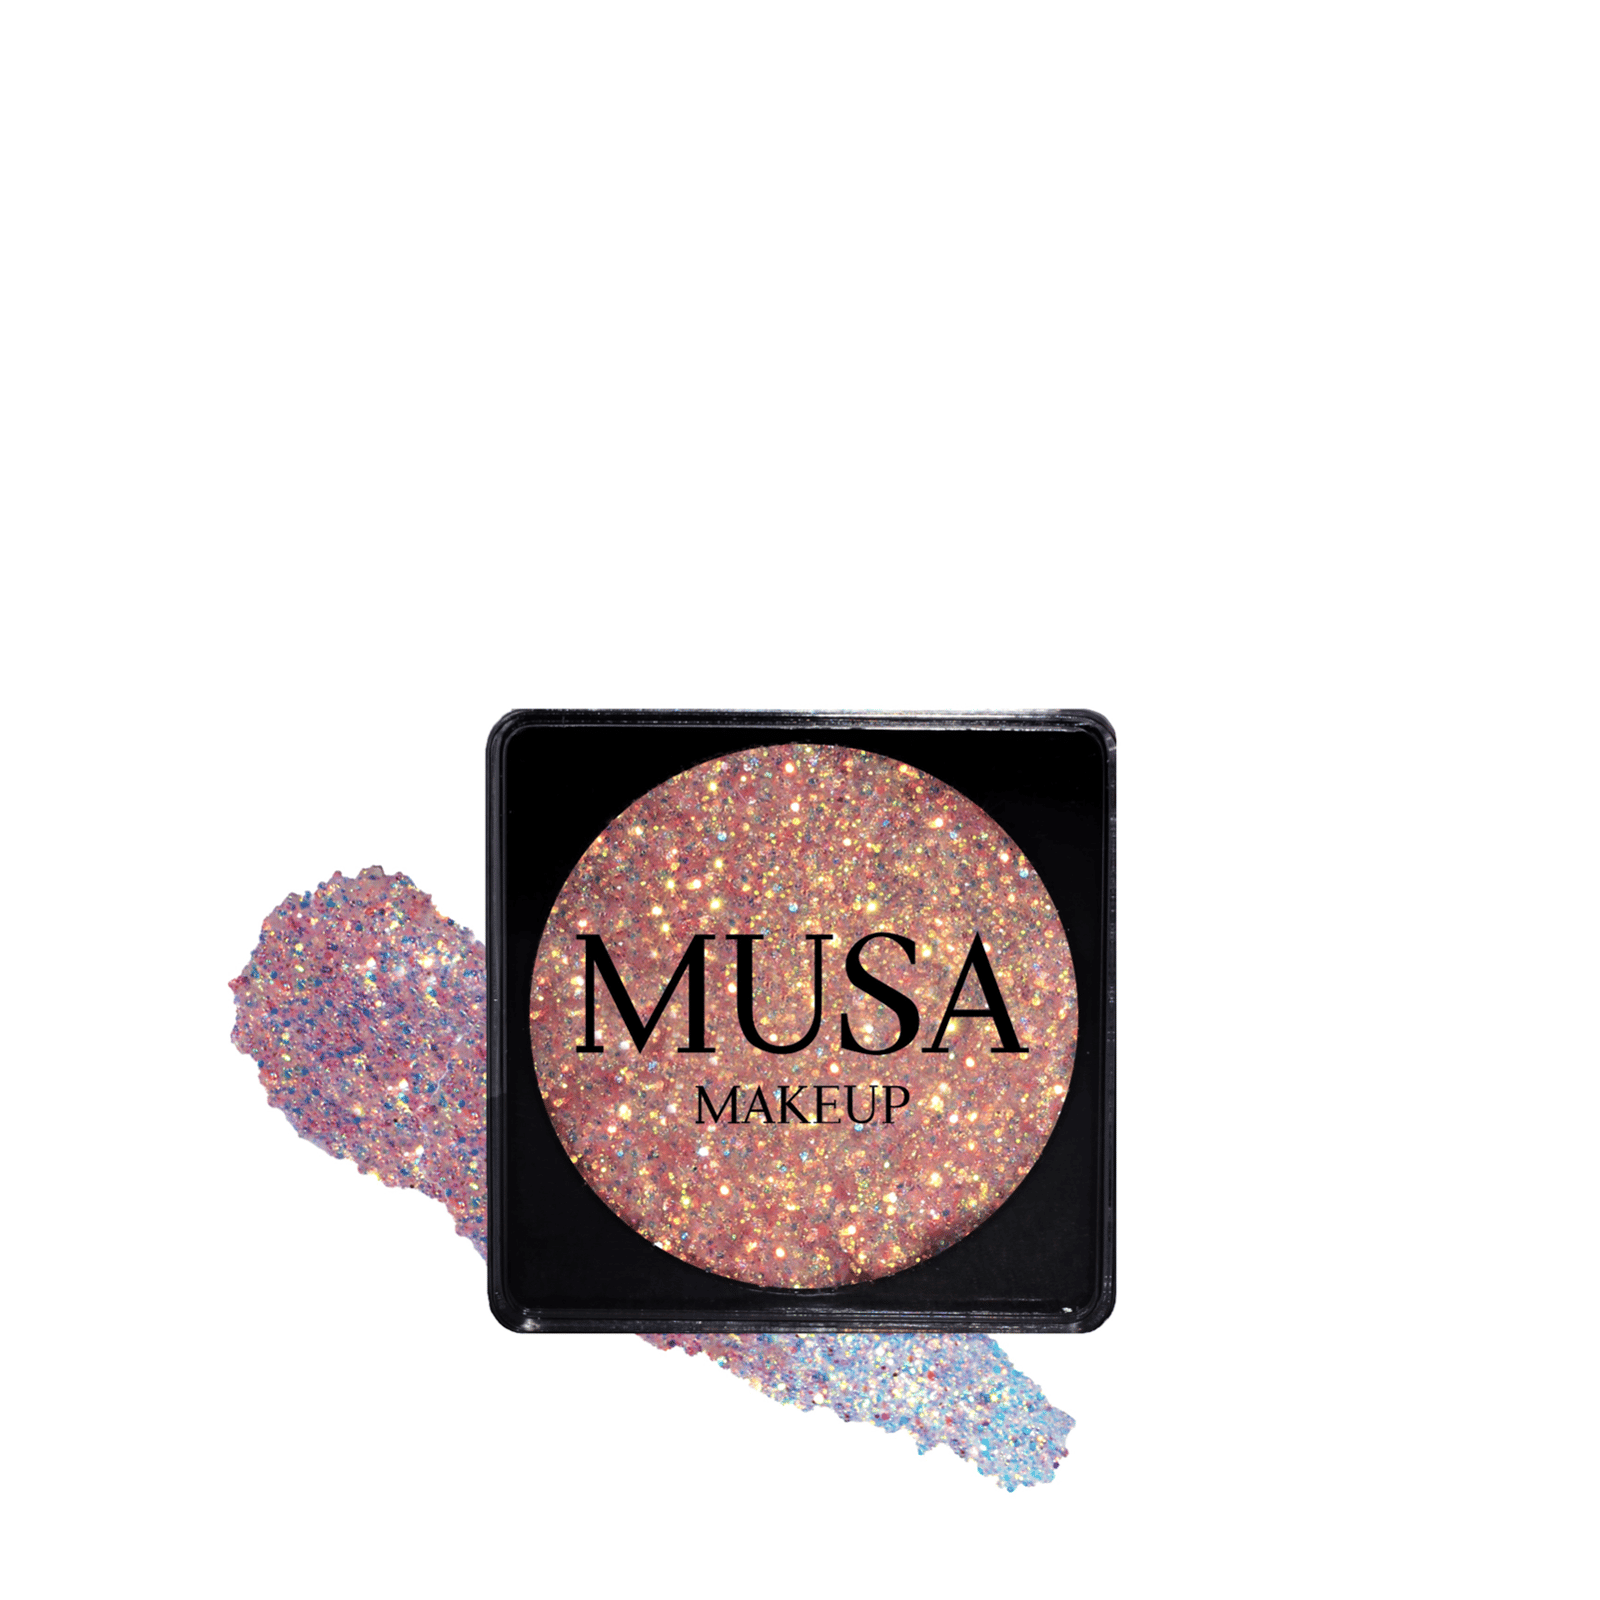 MUSA Makeup Creamy Glitter Angel 4g (0.14 oz)